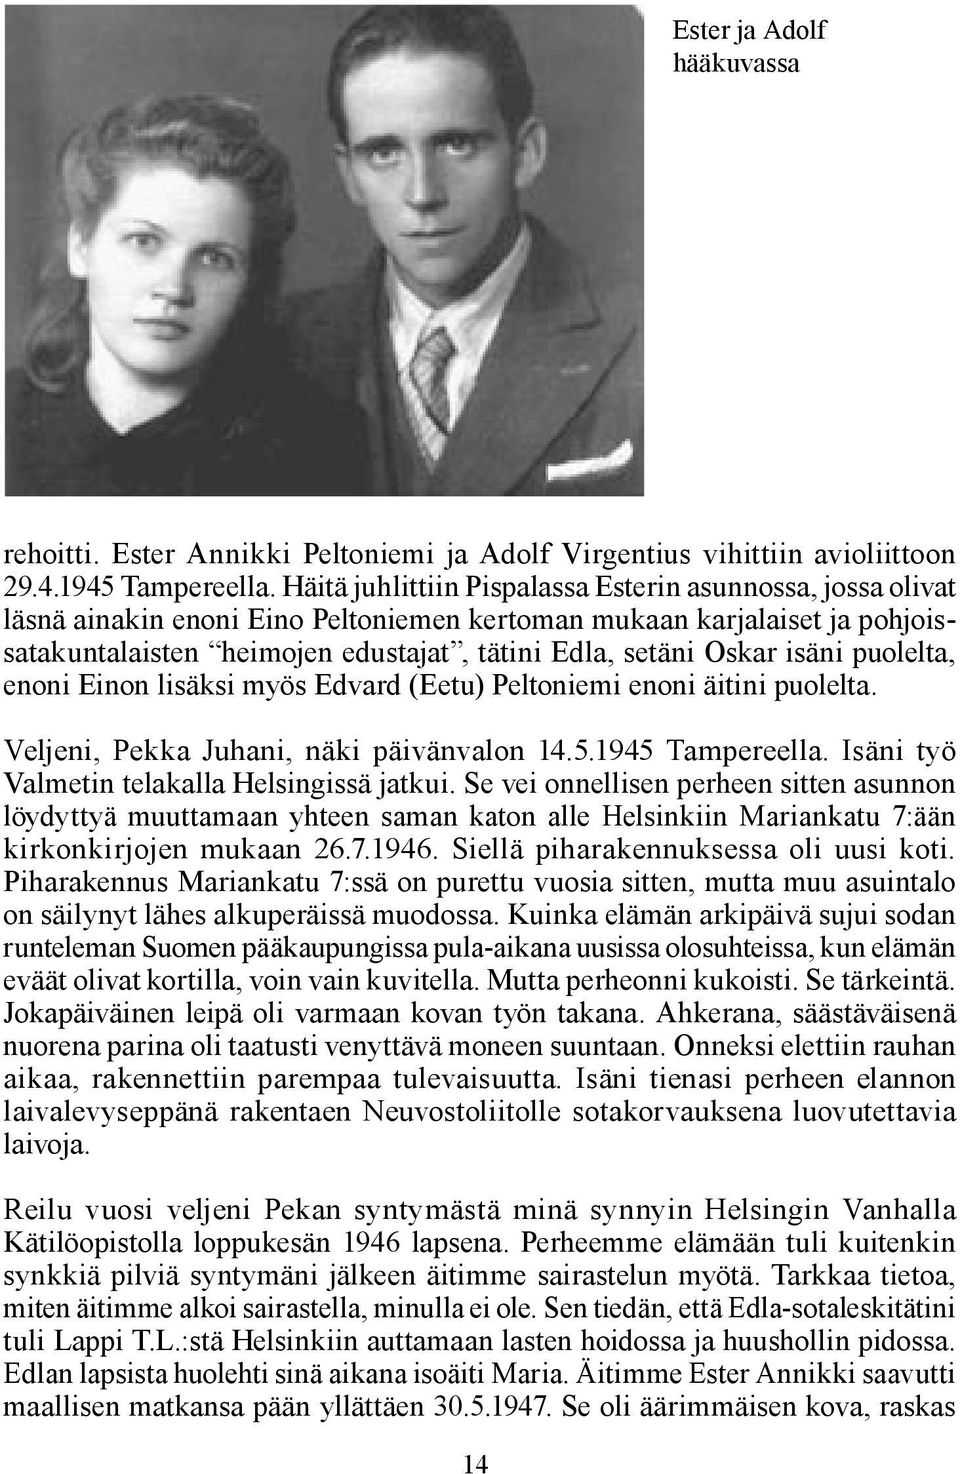 isäni puolelta, enoni Einon lisäksi myös Edvard (Eetu) Peltoniemi enoni äitini puolelta. Veljeni, Pekka Juhani, näki päivänvalon 14.5.1945 Tampereella. Isäni työ Valmetin telakalla Helsingissä jatkui.